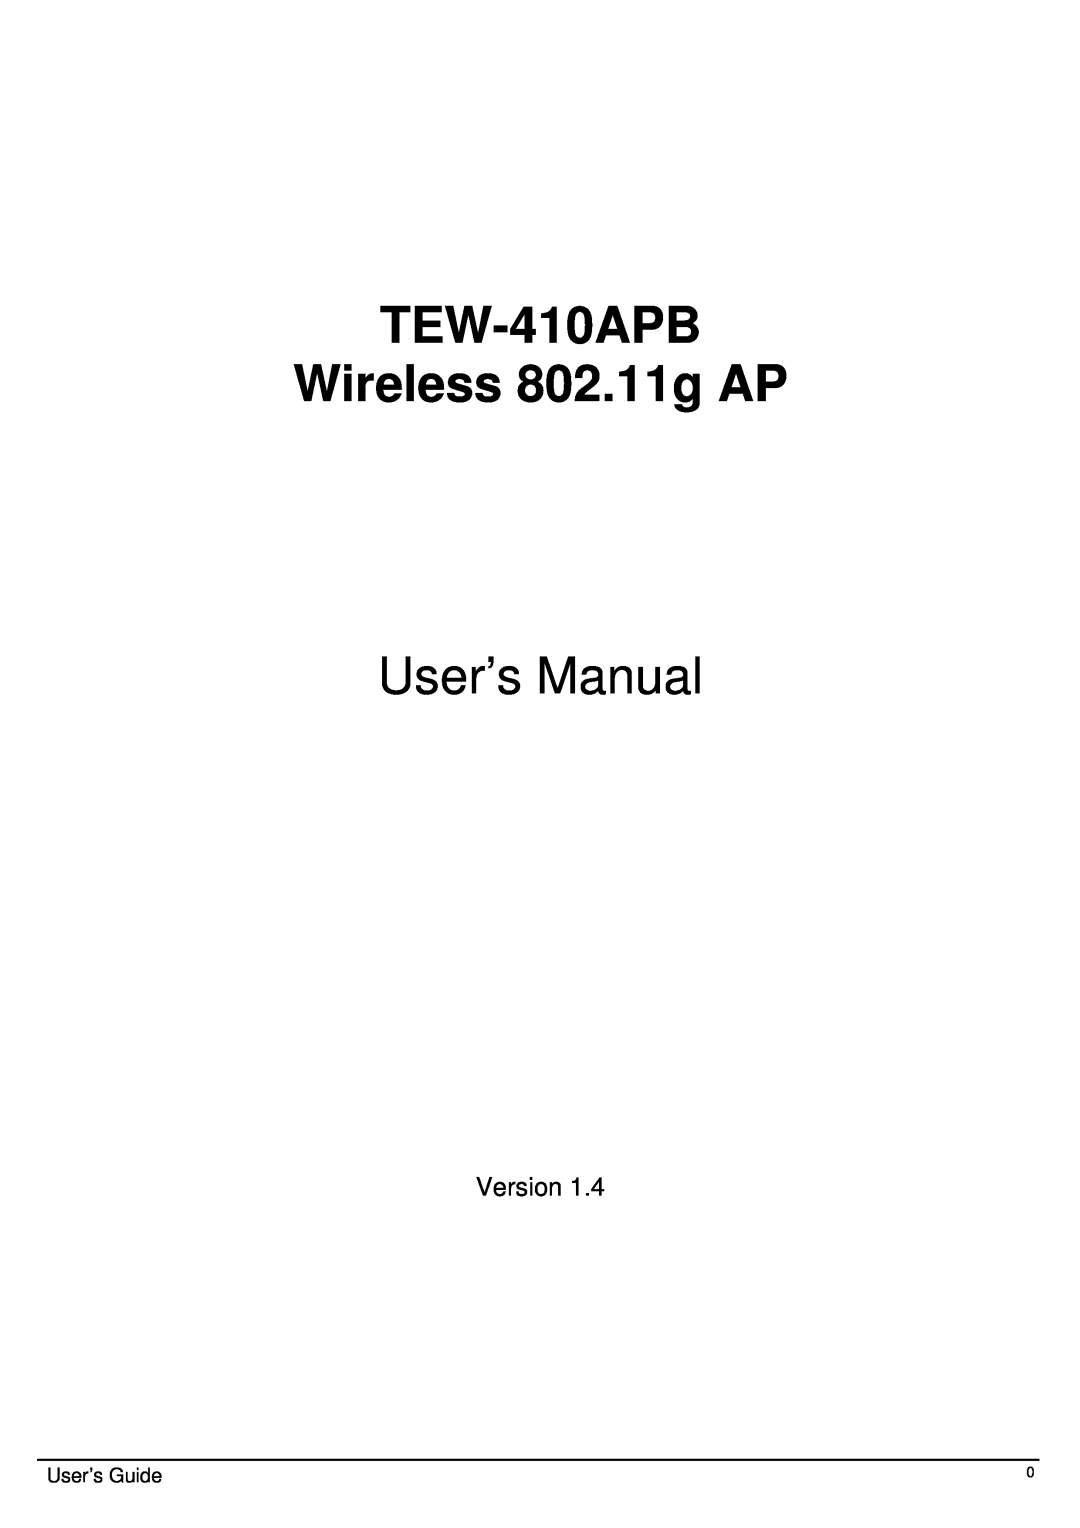 TRENDnet user manual Version, TEW-410APB Wireless 802.11g AP, User’s Manual, User’s Guide 